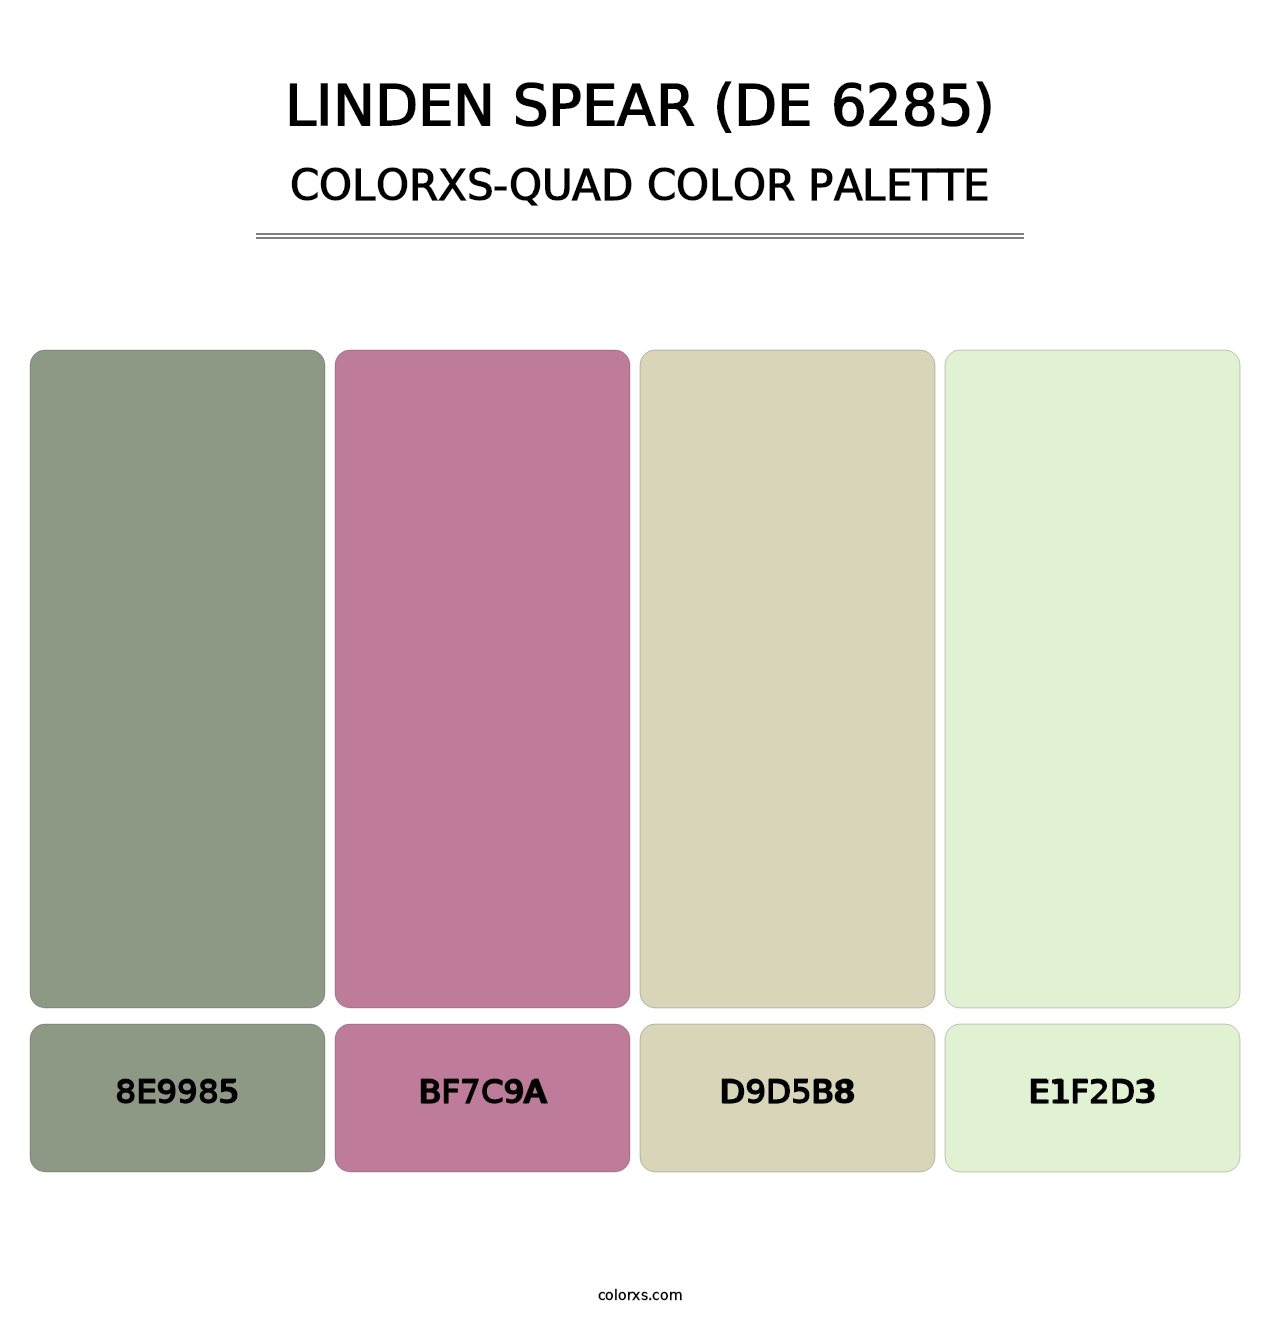 Linden Spear (DE 6285) - Colorxs Quad Palette